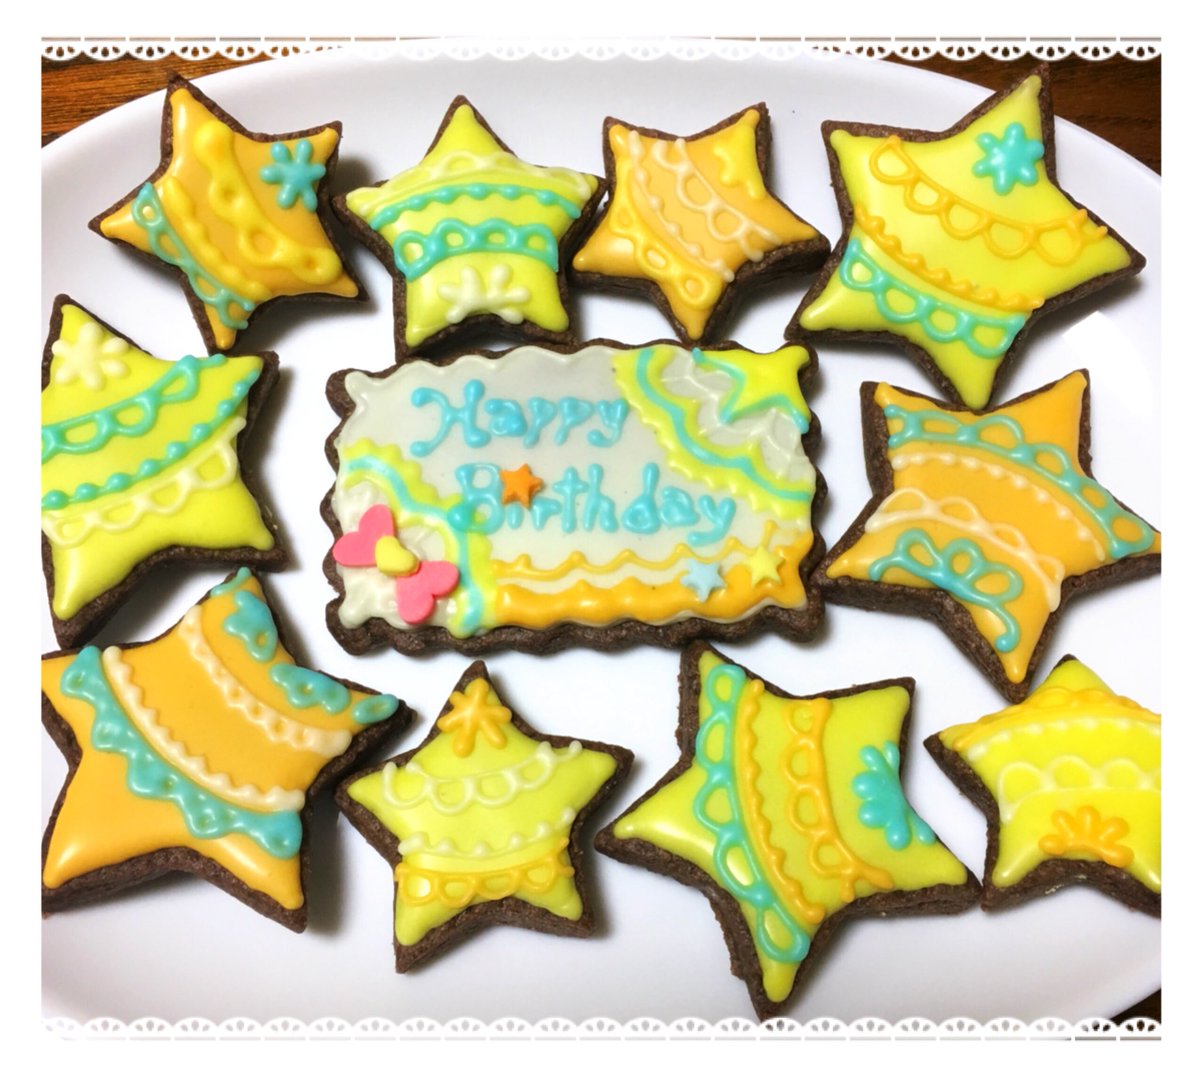 オカダ ミカ 手描きイラストケーキ On Twitter イメージカラーで アイシングクッキー作ってみました ほまれちゃんお誕生日おめでとう アイシングクッキー キュアエトワール生誕祭2018 輝木ほまれ生誕祭2018